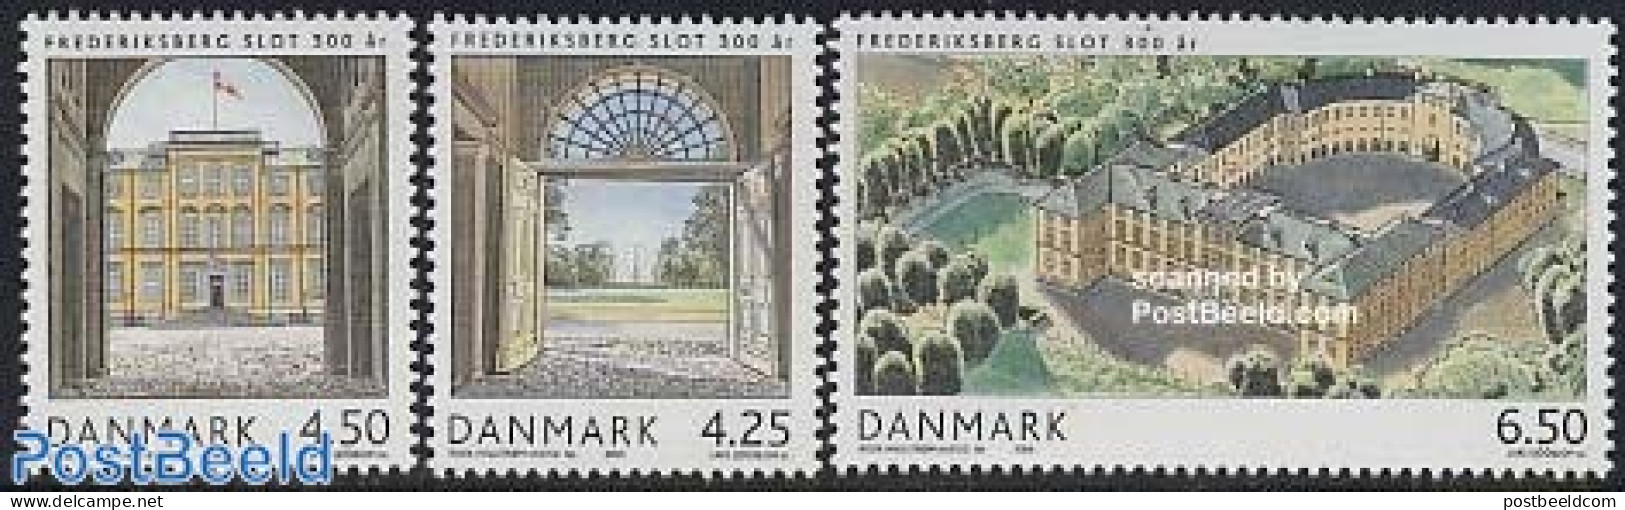 Denmark 2004 Frederiksberg 3v, Mint NH, Art - Castles & Fortifications - Neufs